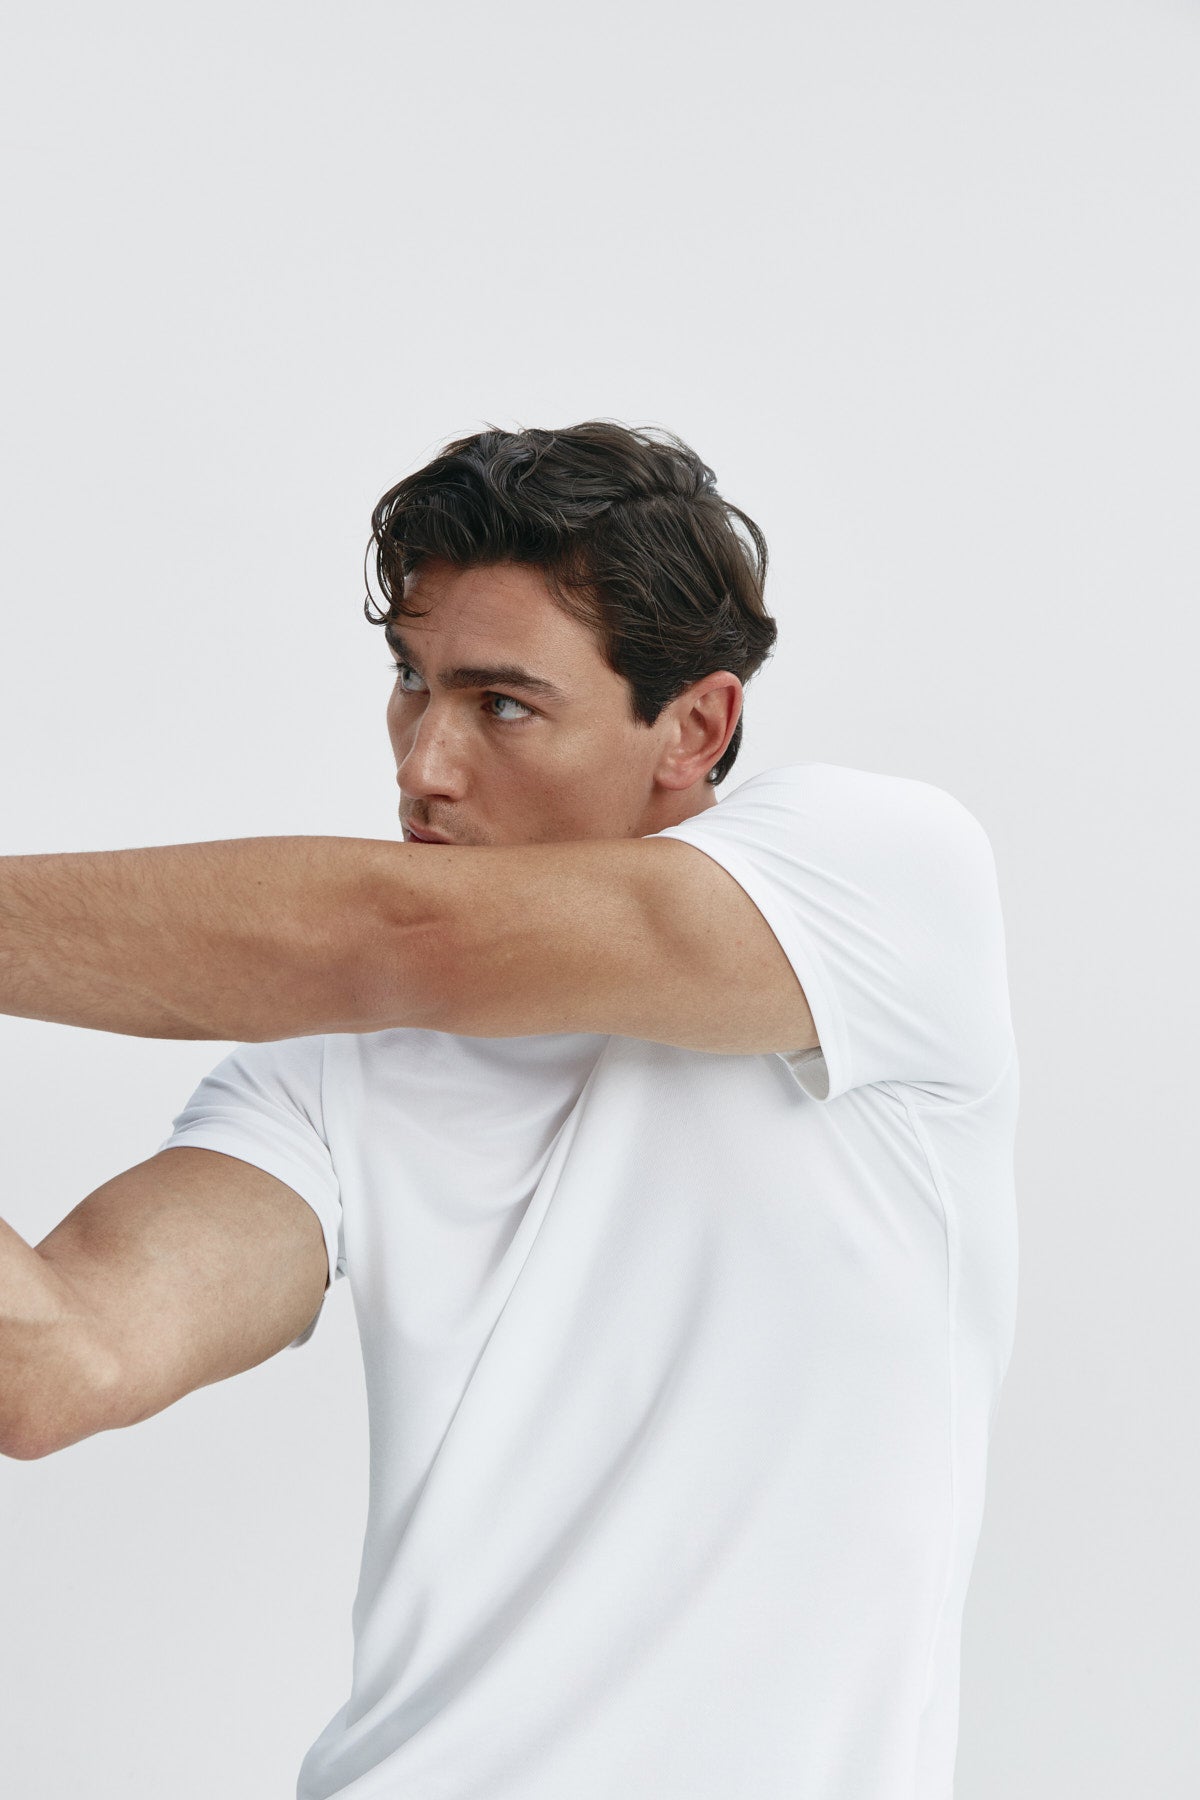 Camiseta de hombre blanca de manga corta, antiarrugas y antimanchas. Foto flexibilidad.